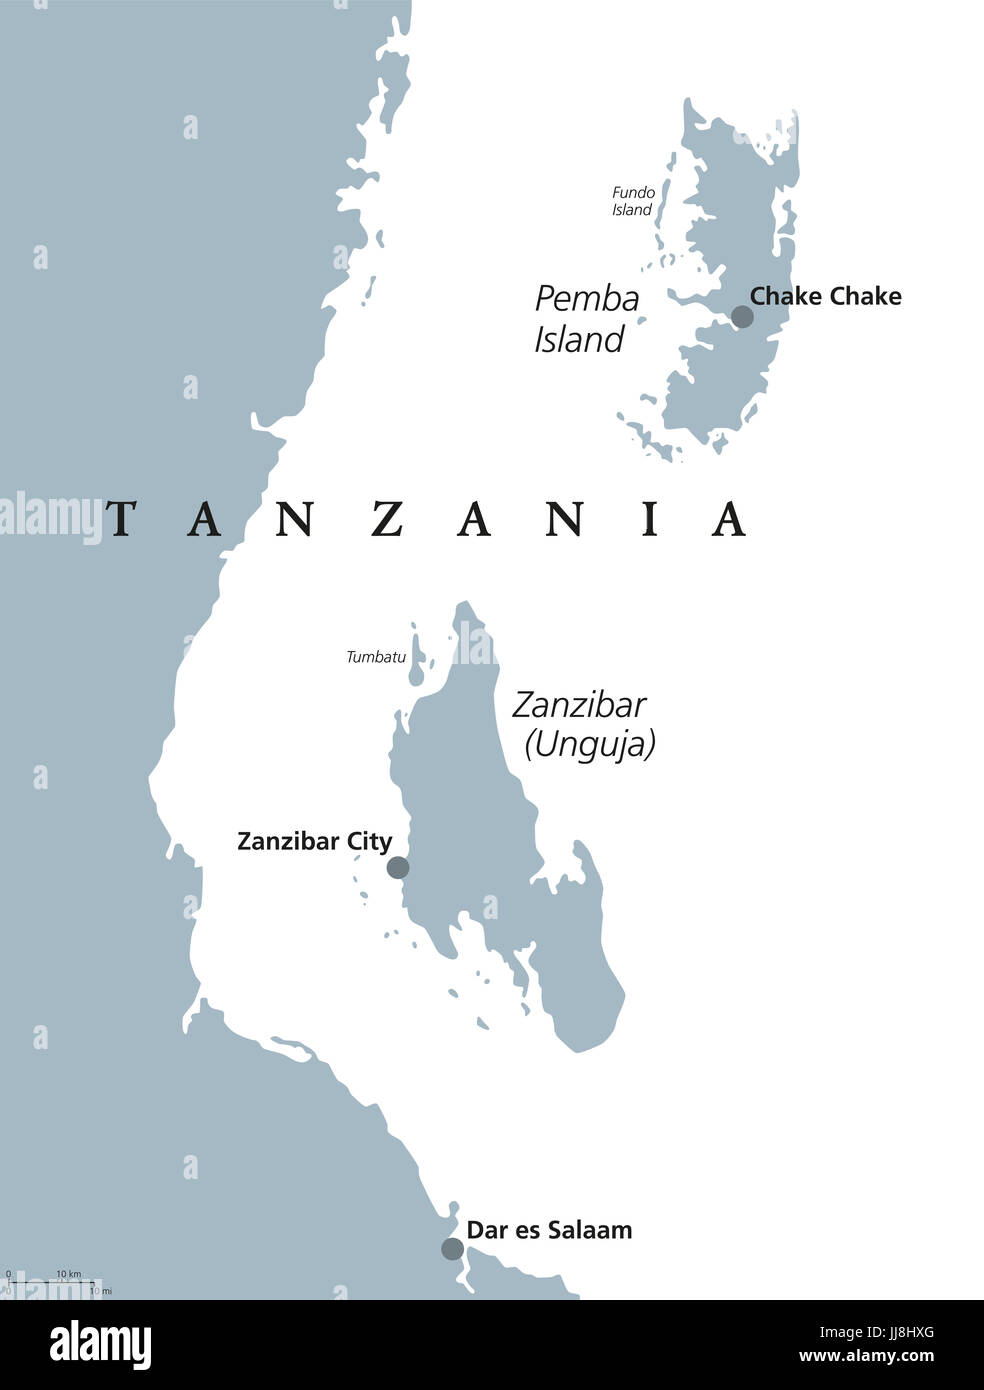 Zanzibar and Pemba Island political map. Semi-autonomous region of Tanzania in East Africa. Zanzibar Archipelago in the Indian Ocean. Illustration. Stock Photo